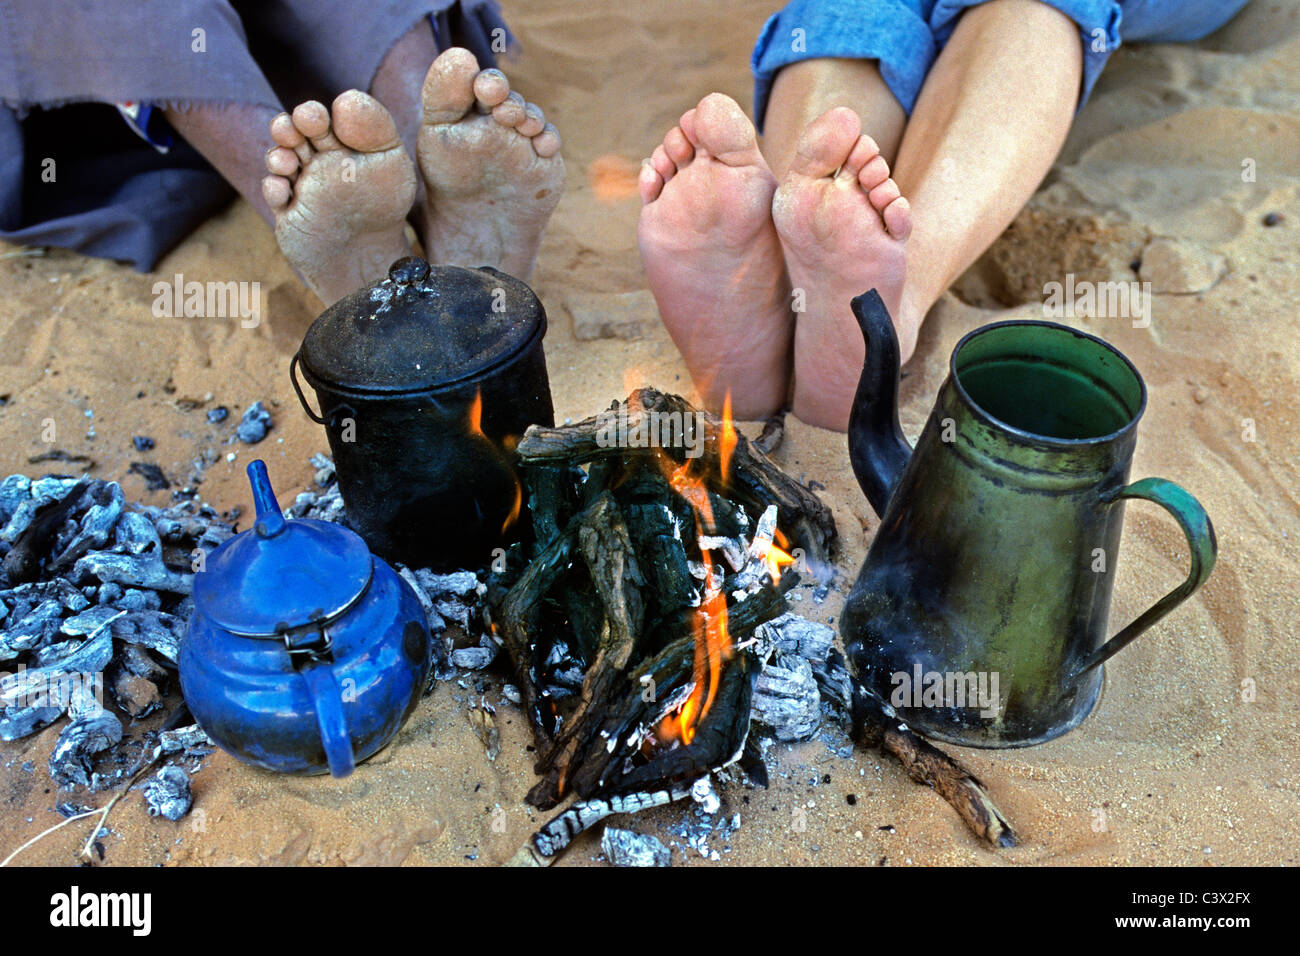 Algeria, Djanet, il Deserto del Sahara, piedi di uomo delle tribù Tuareg e turisti. Teiere. Campfire. Foto Stock